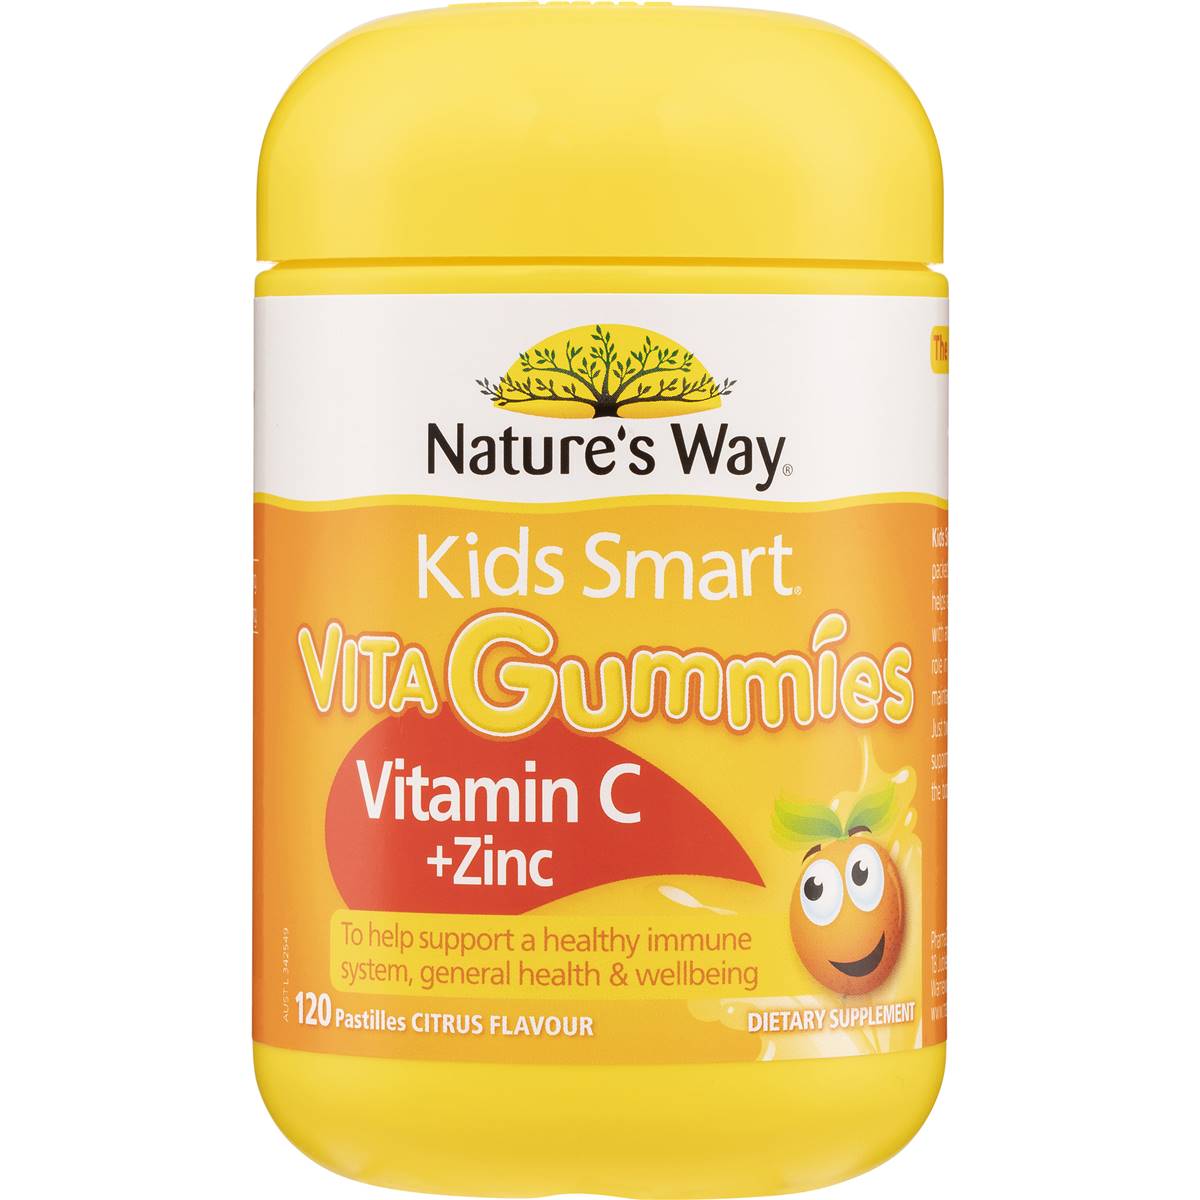 Nature's Way Kids Smart Vita Gummies Vit C & Zinc 120pk